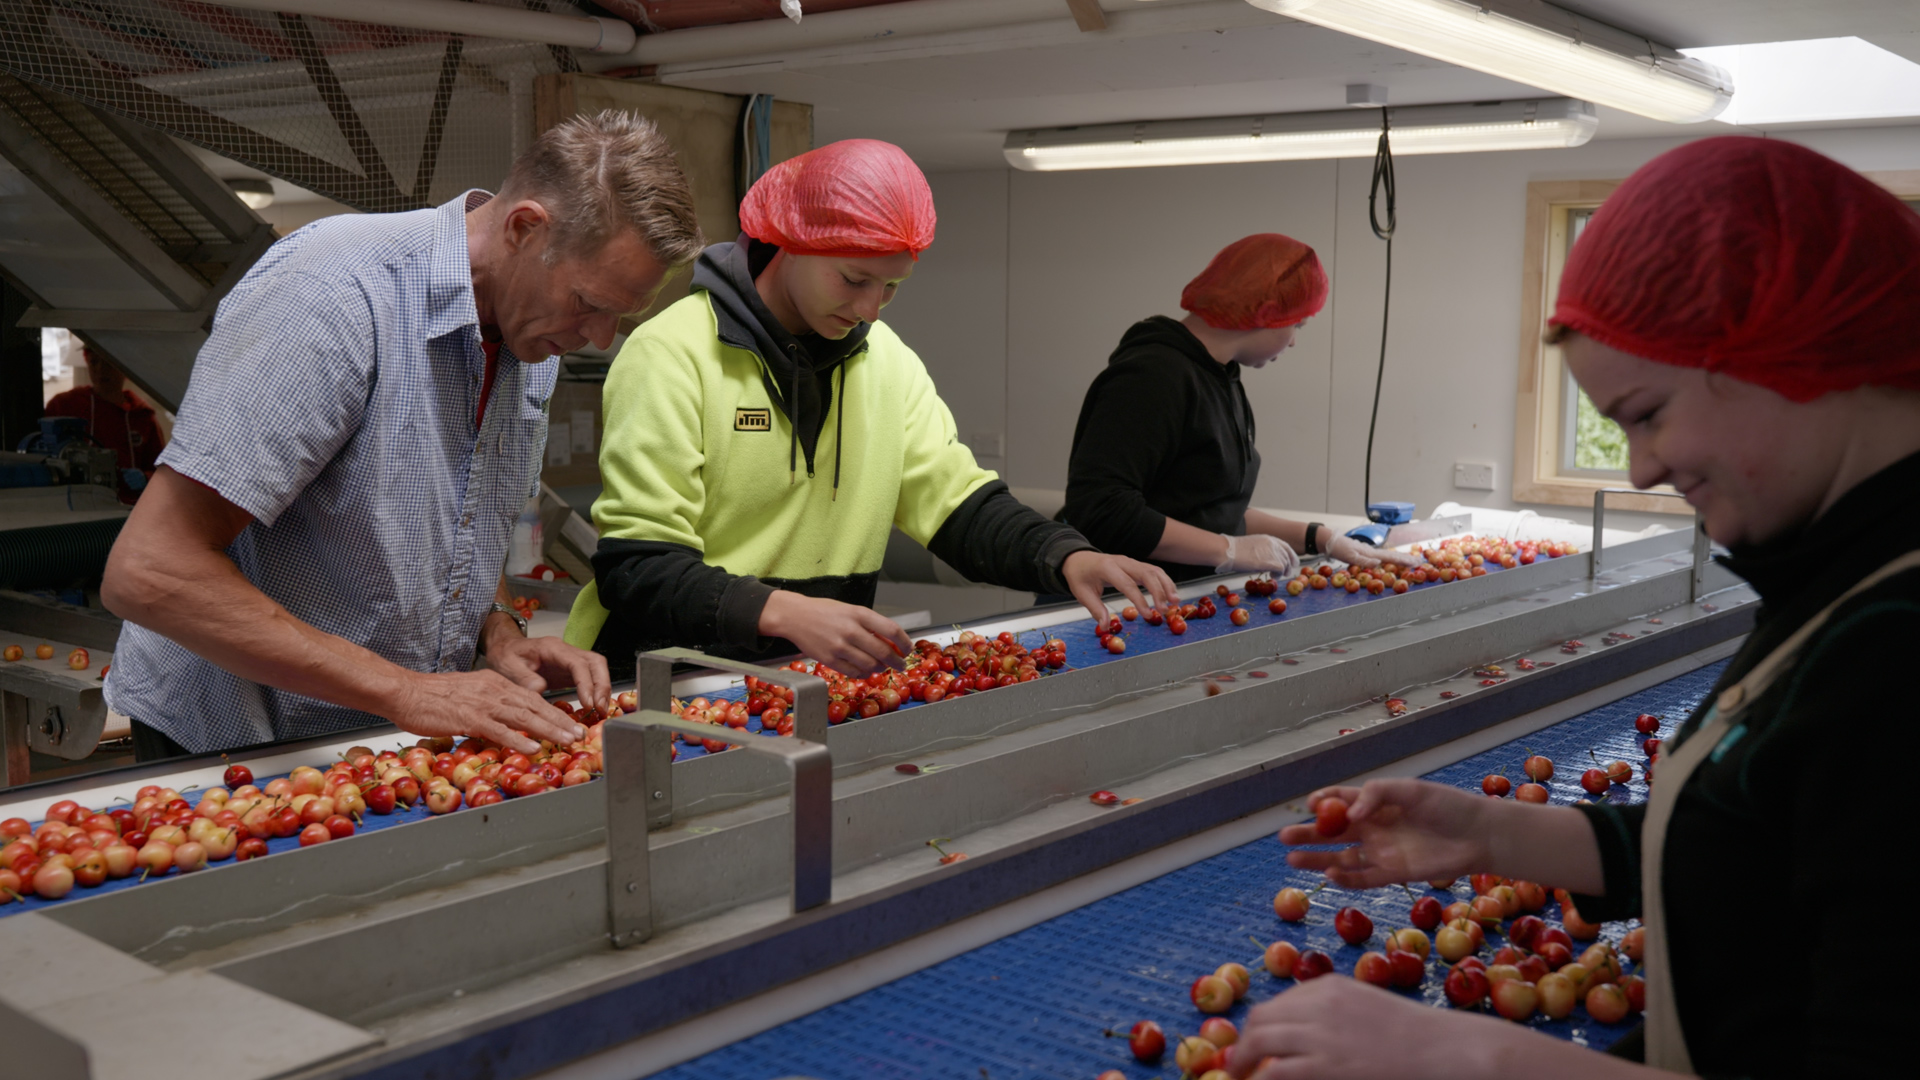 4 people sorting cherries in a factory